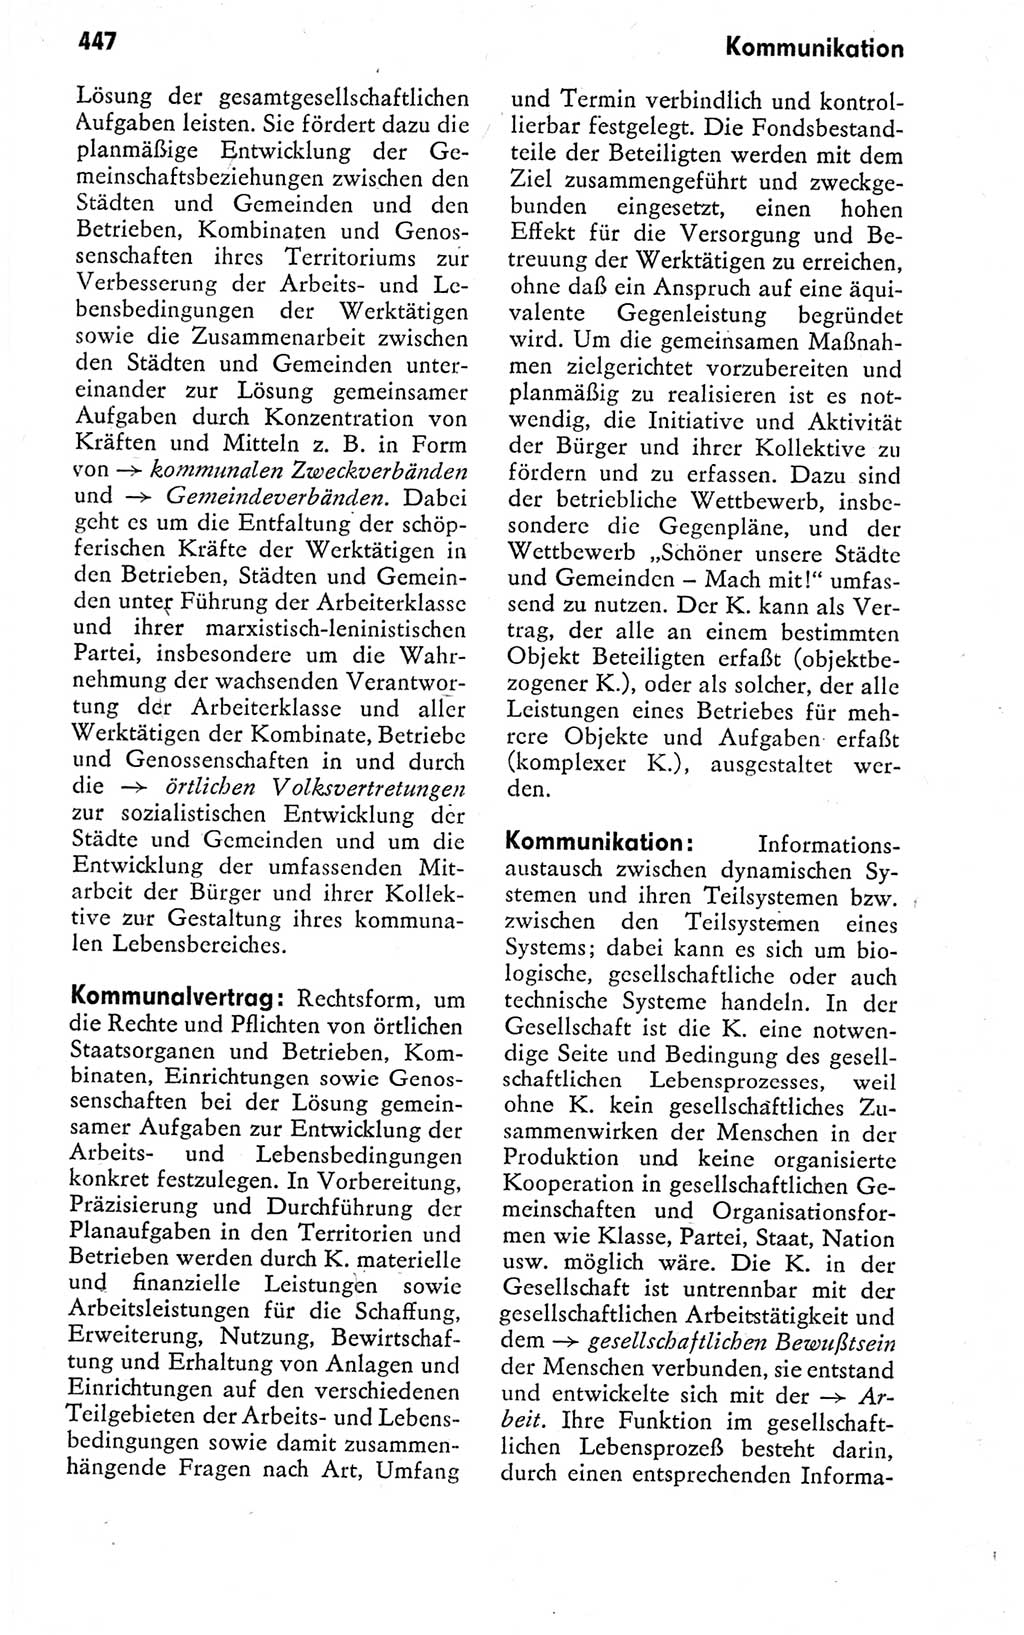 Kleines politisches Wörterbuch [Deutsche Demokratische Republik (DDR)] 1978, Seite 447 (Kl. pol. Wb. DDR 1978, S. 447)